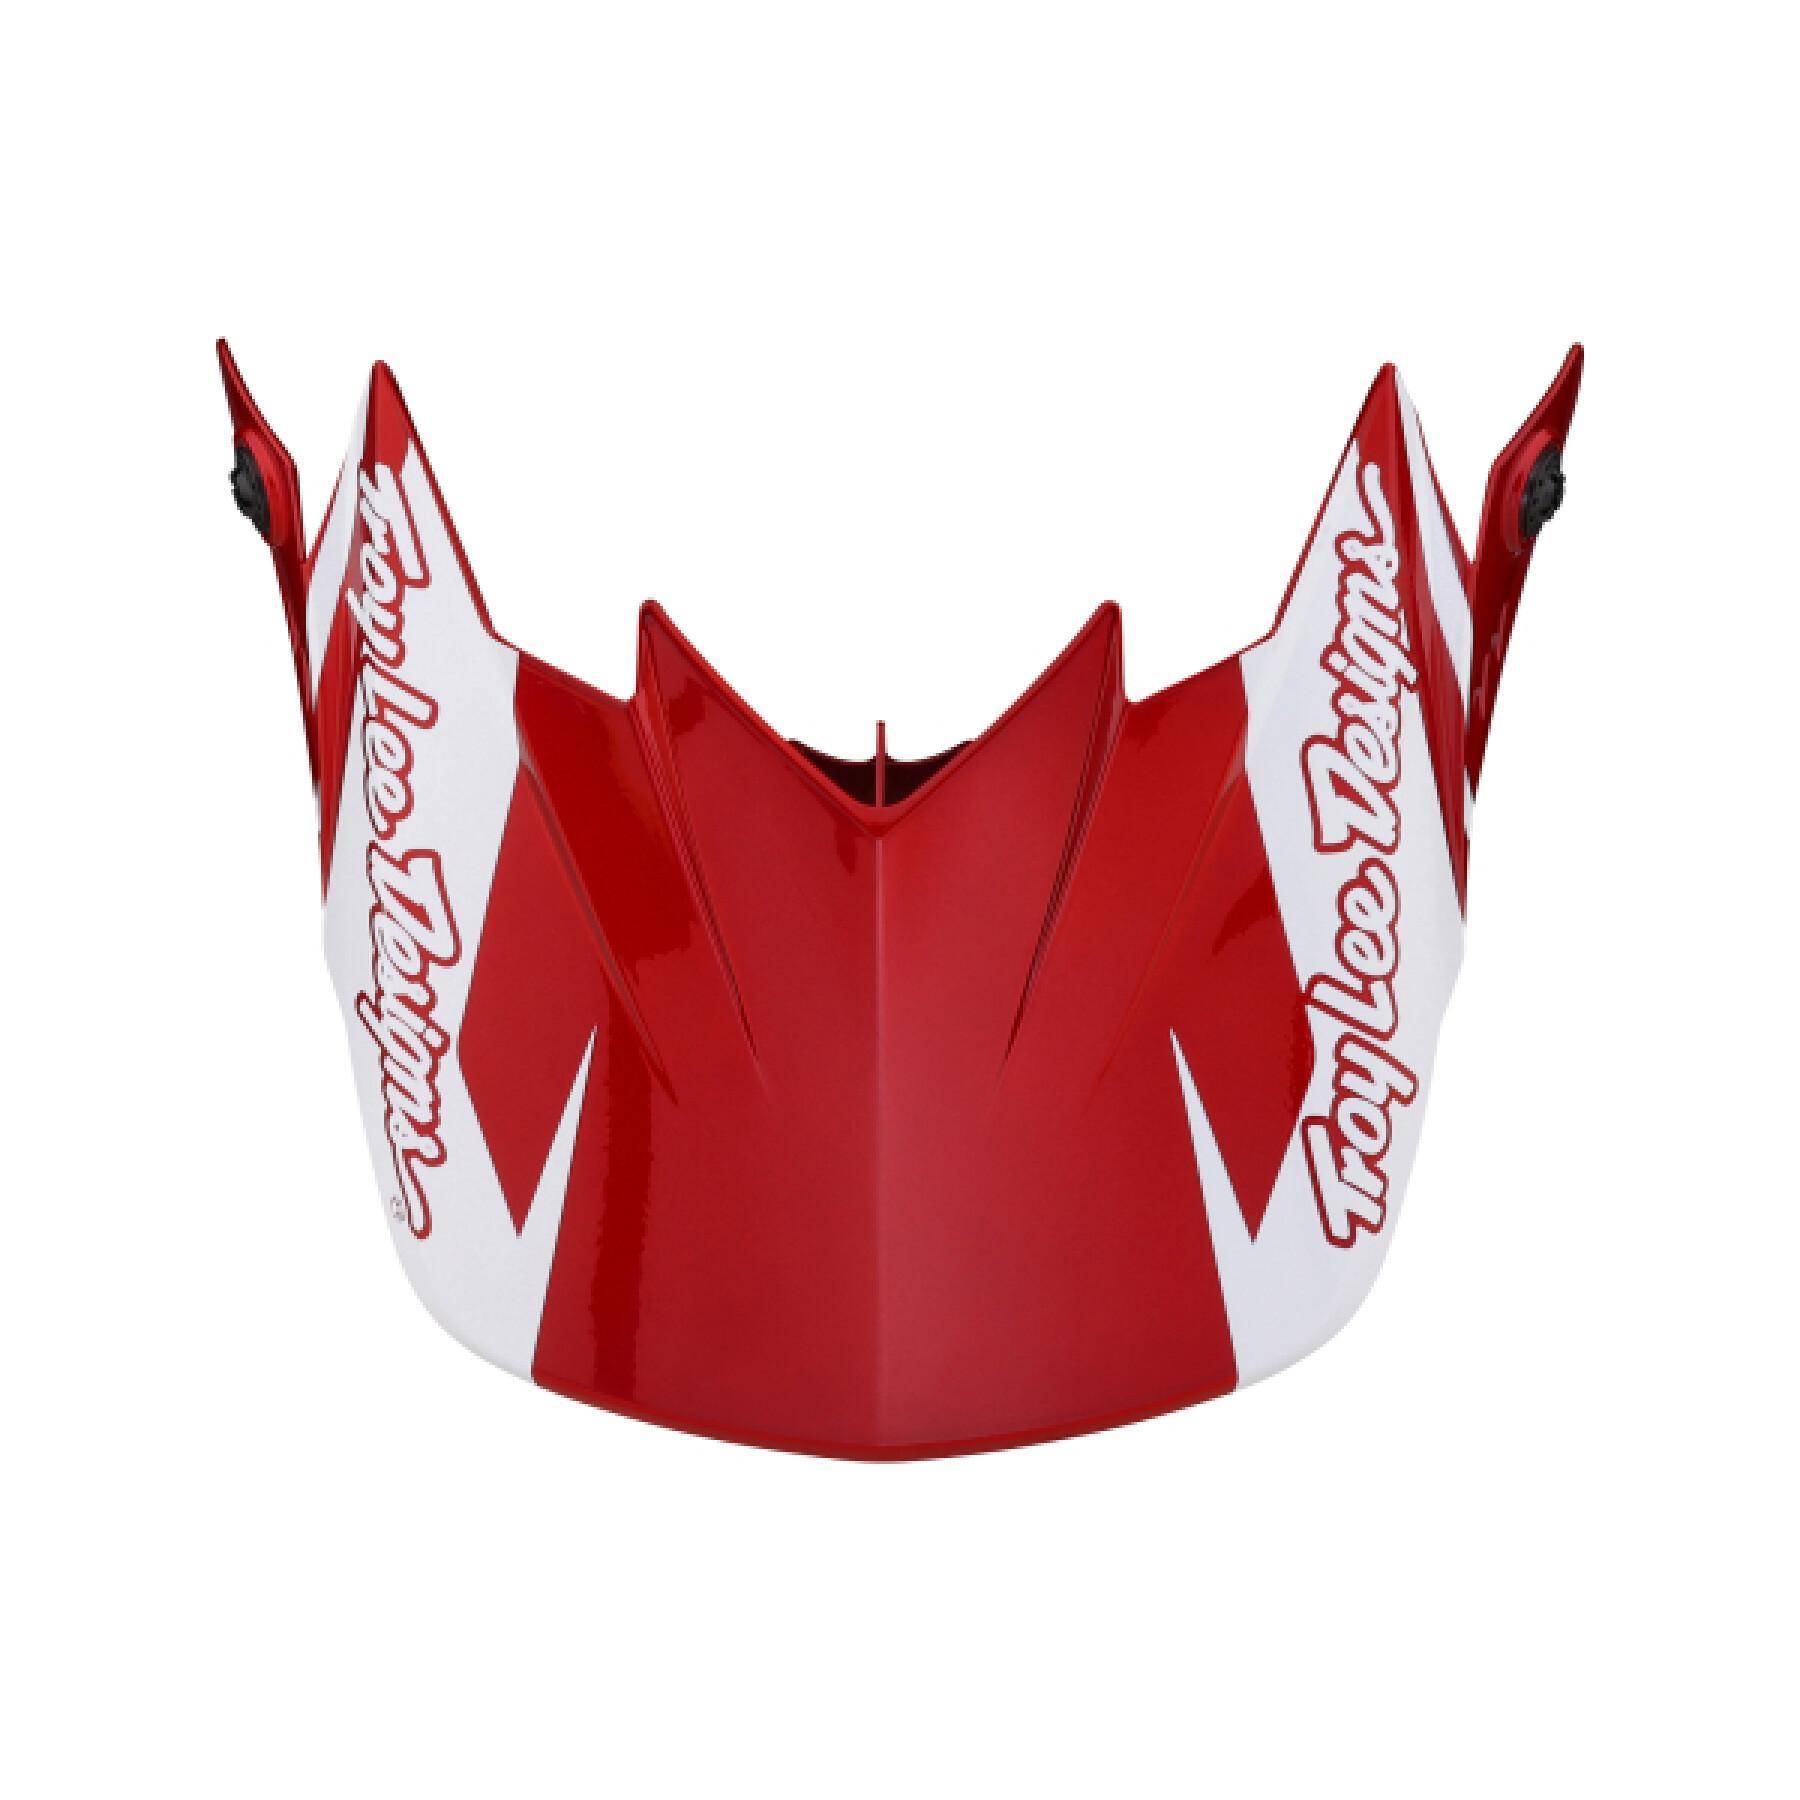 full face moto helmet Troy Lee Designs GP Slice